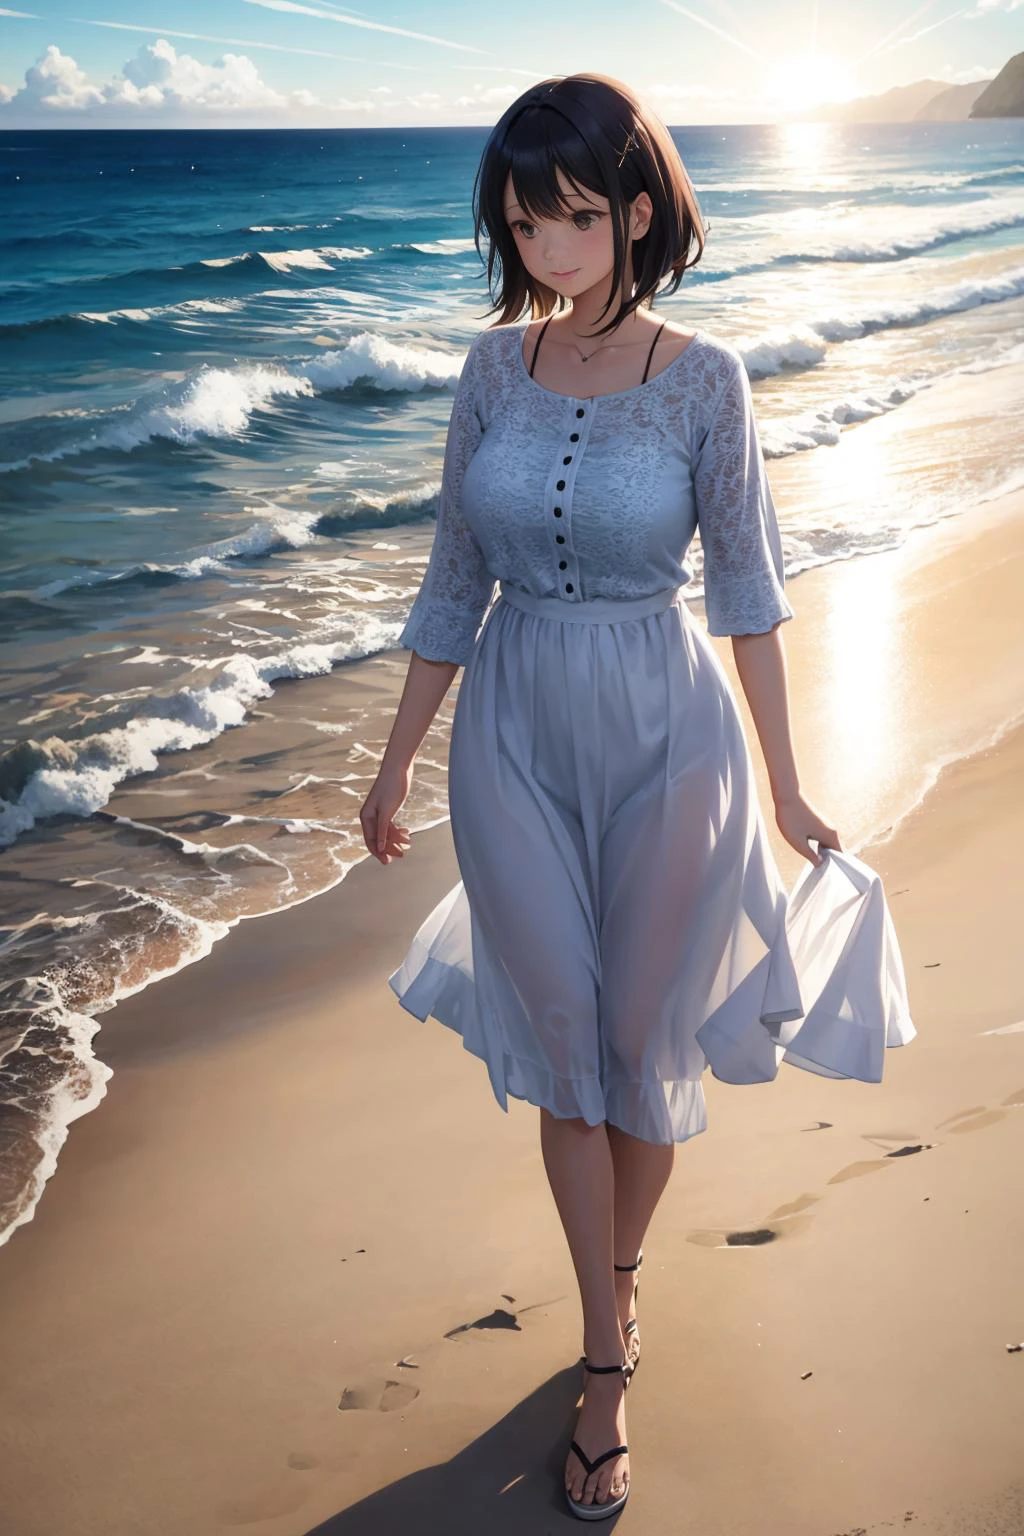 Женщина наслаждается прогулкой по пляжу. Возраст 35. солнечный свет отражается в океане. объемный свет. отражение, преломление.